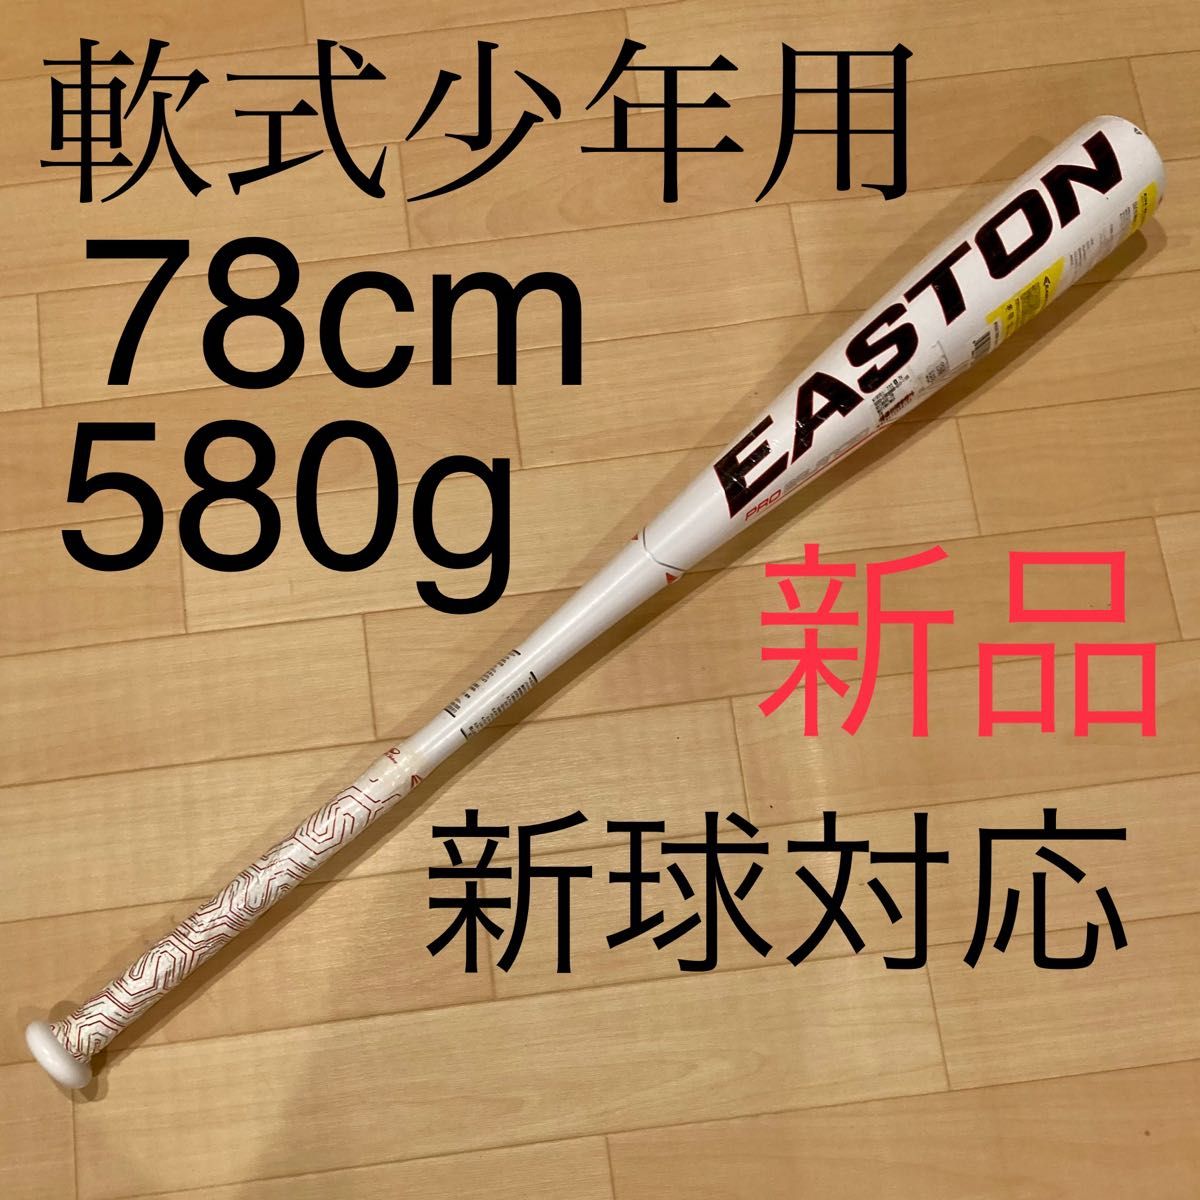 イーストン GHOST X 軟式少年用 78cm 軟式 少年野球用バット 野球